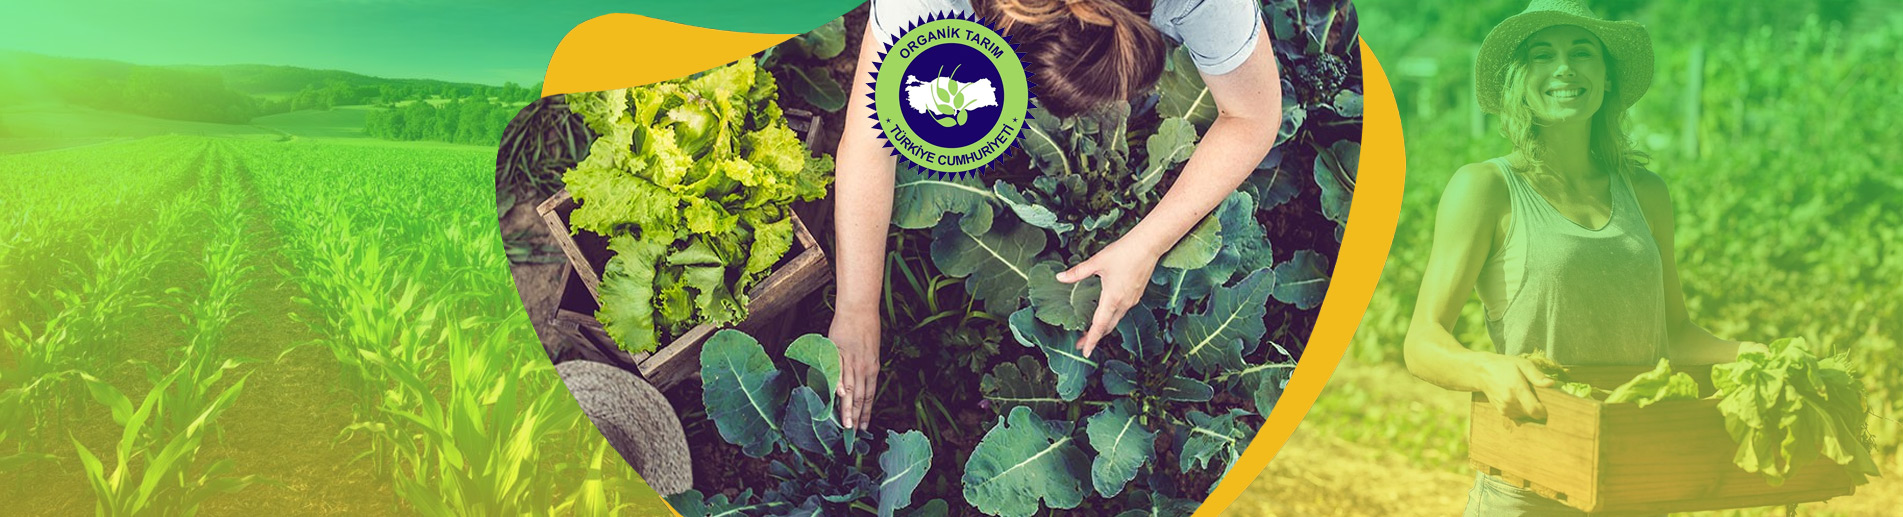 Ekolojik Tarım Belgesi Organik Tarım Ürün Sertifikası